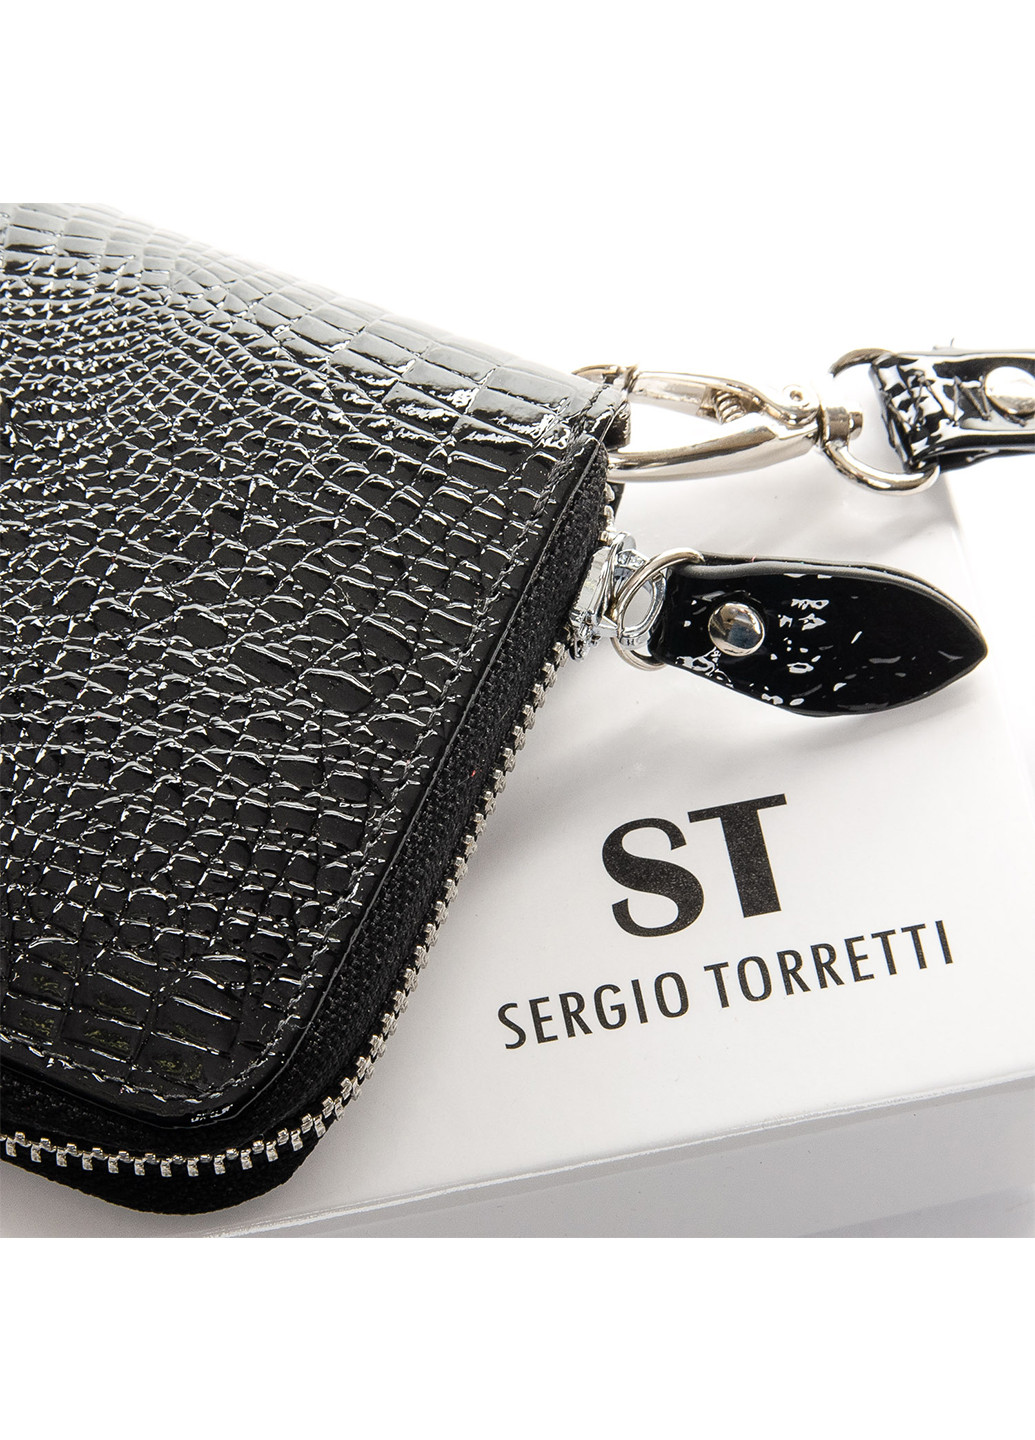 Кошелек женский кожаный на молнии Sergio Torretti w38 (266553530)